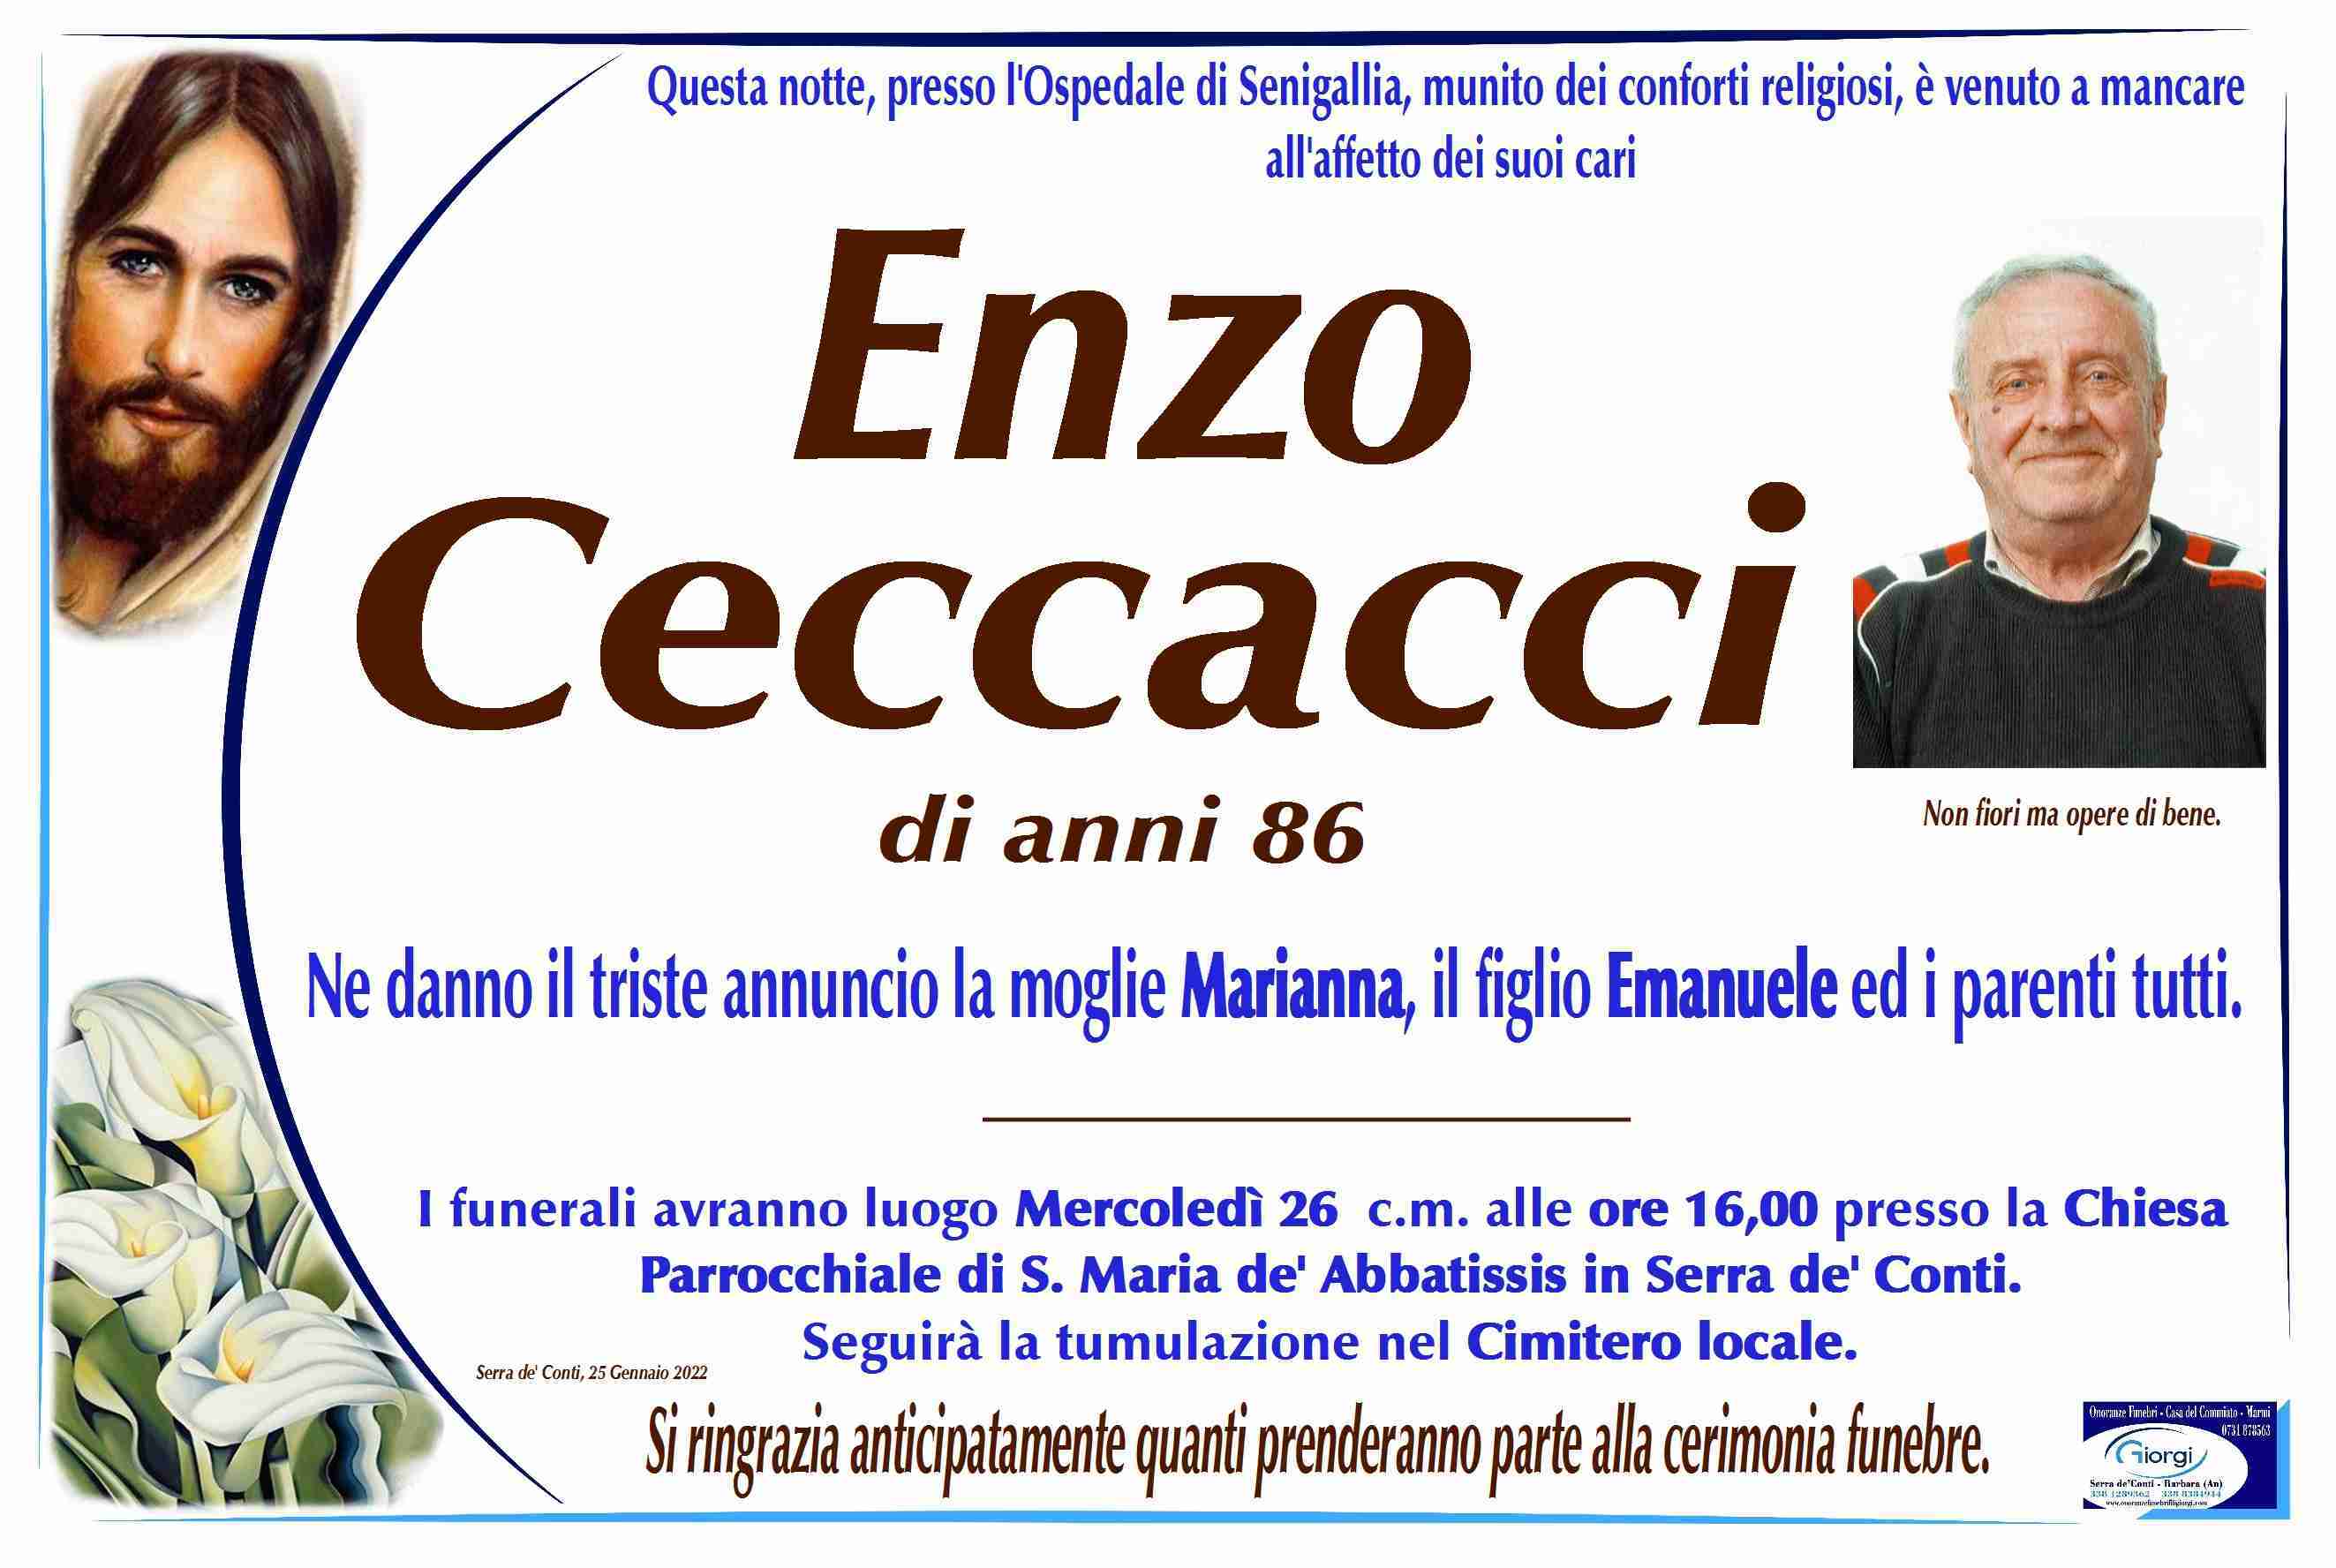 Enzo Ceccacci